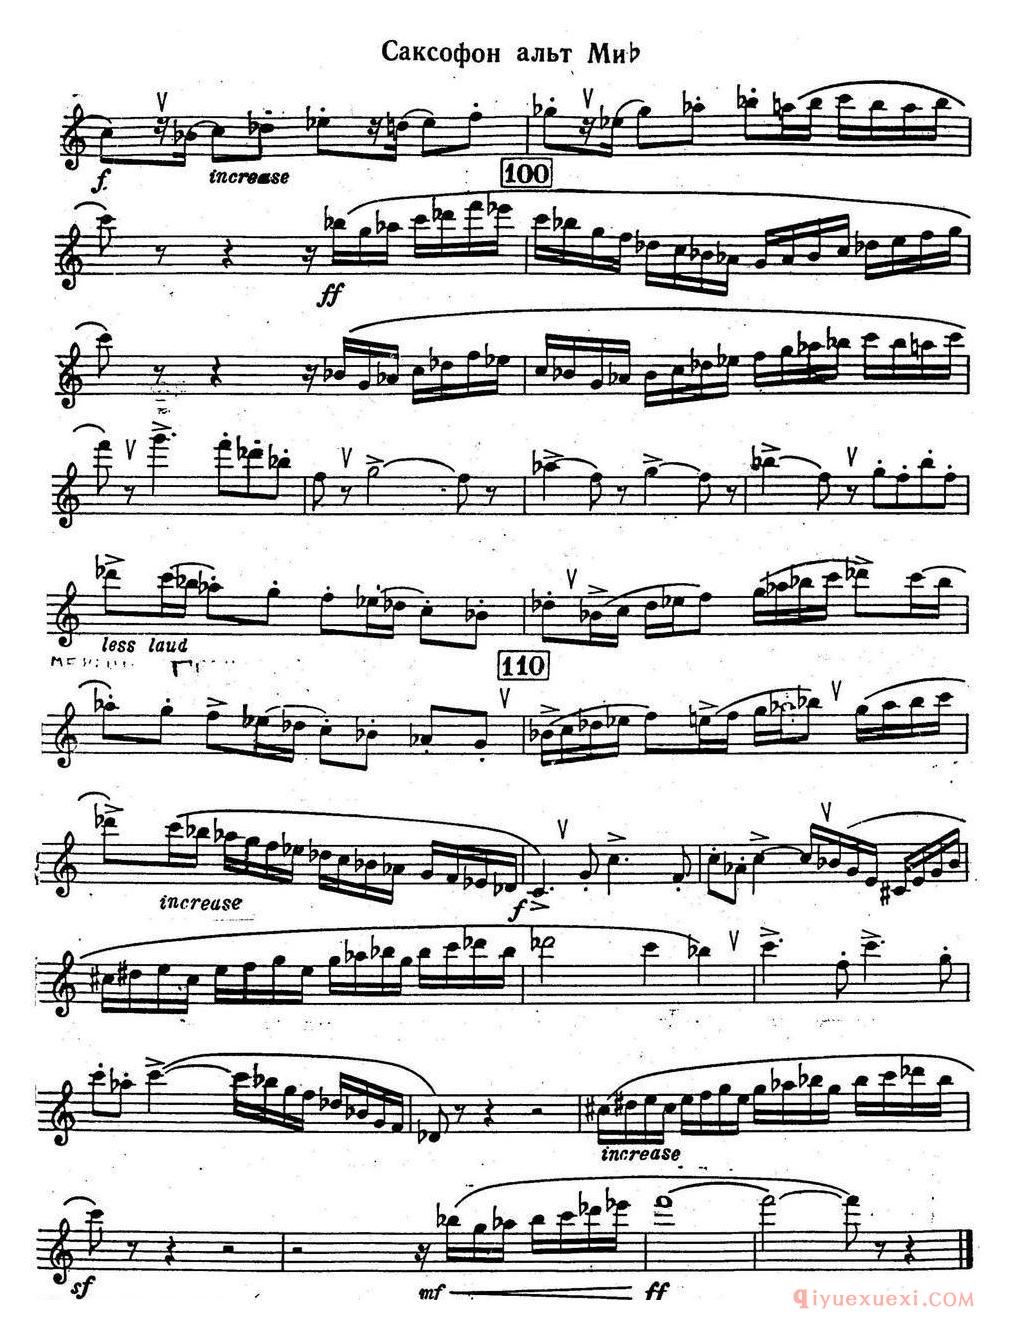 克莱斯顿《中音萨克斯管奏鸣曲》第一乐章